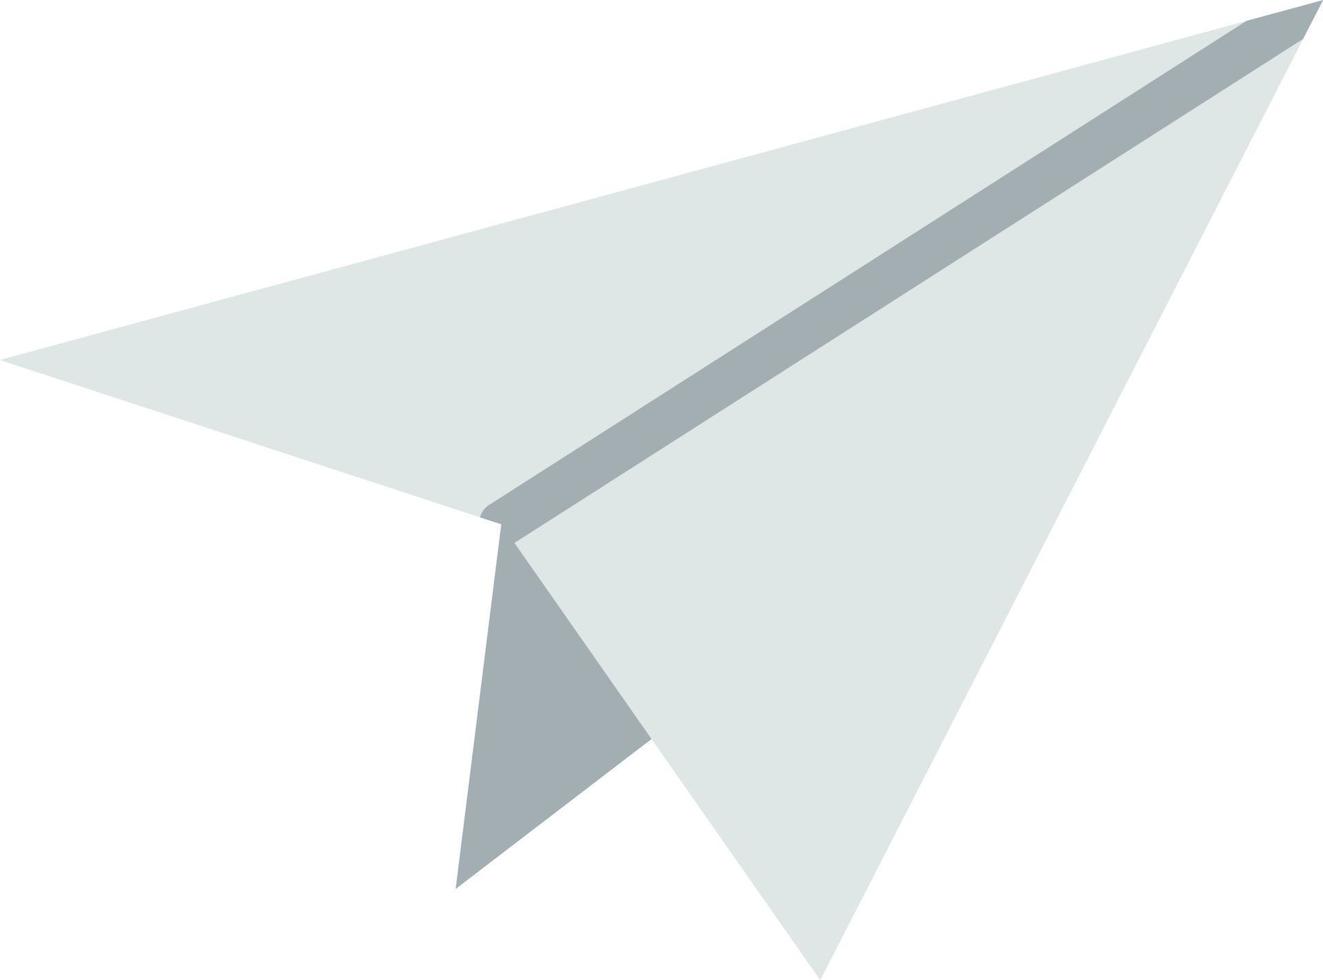 icona piatta dell'aereo di carta vettore